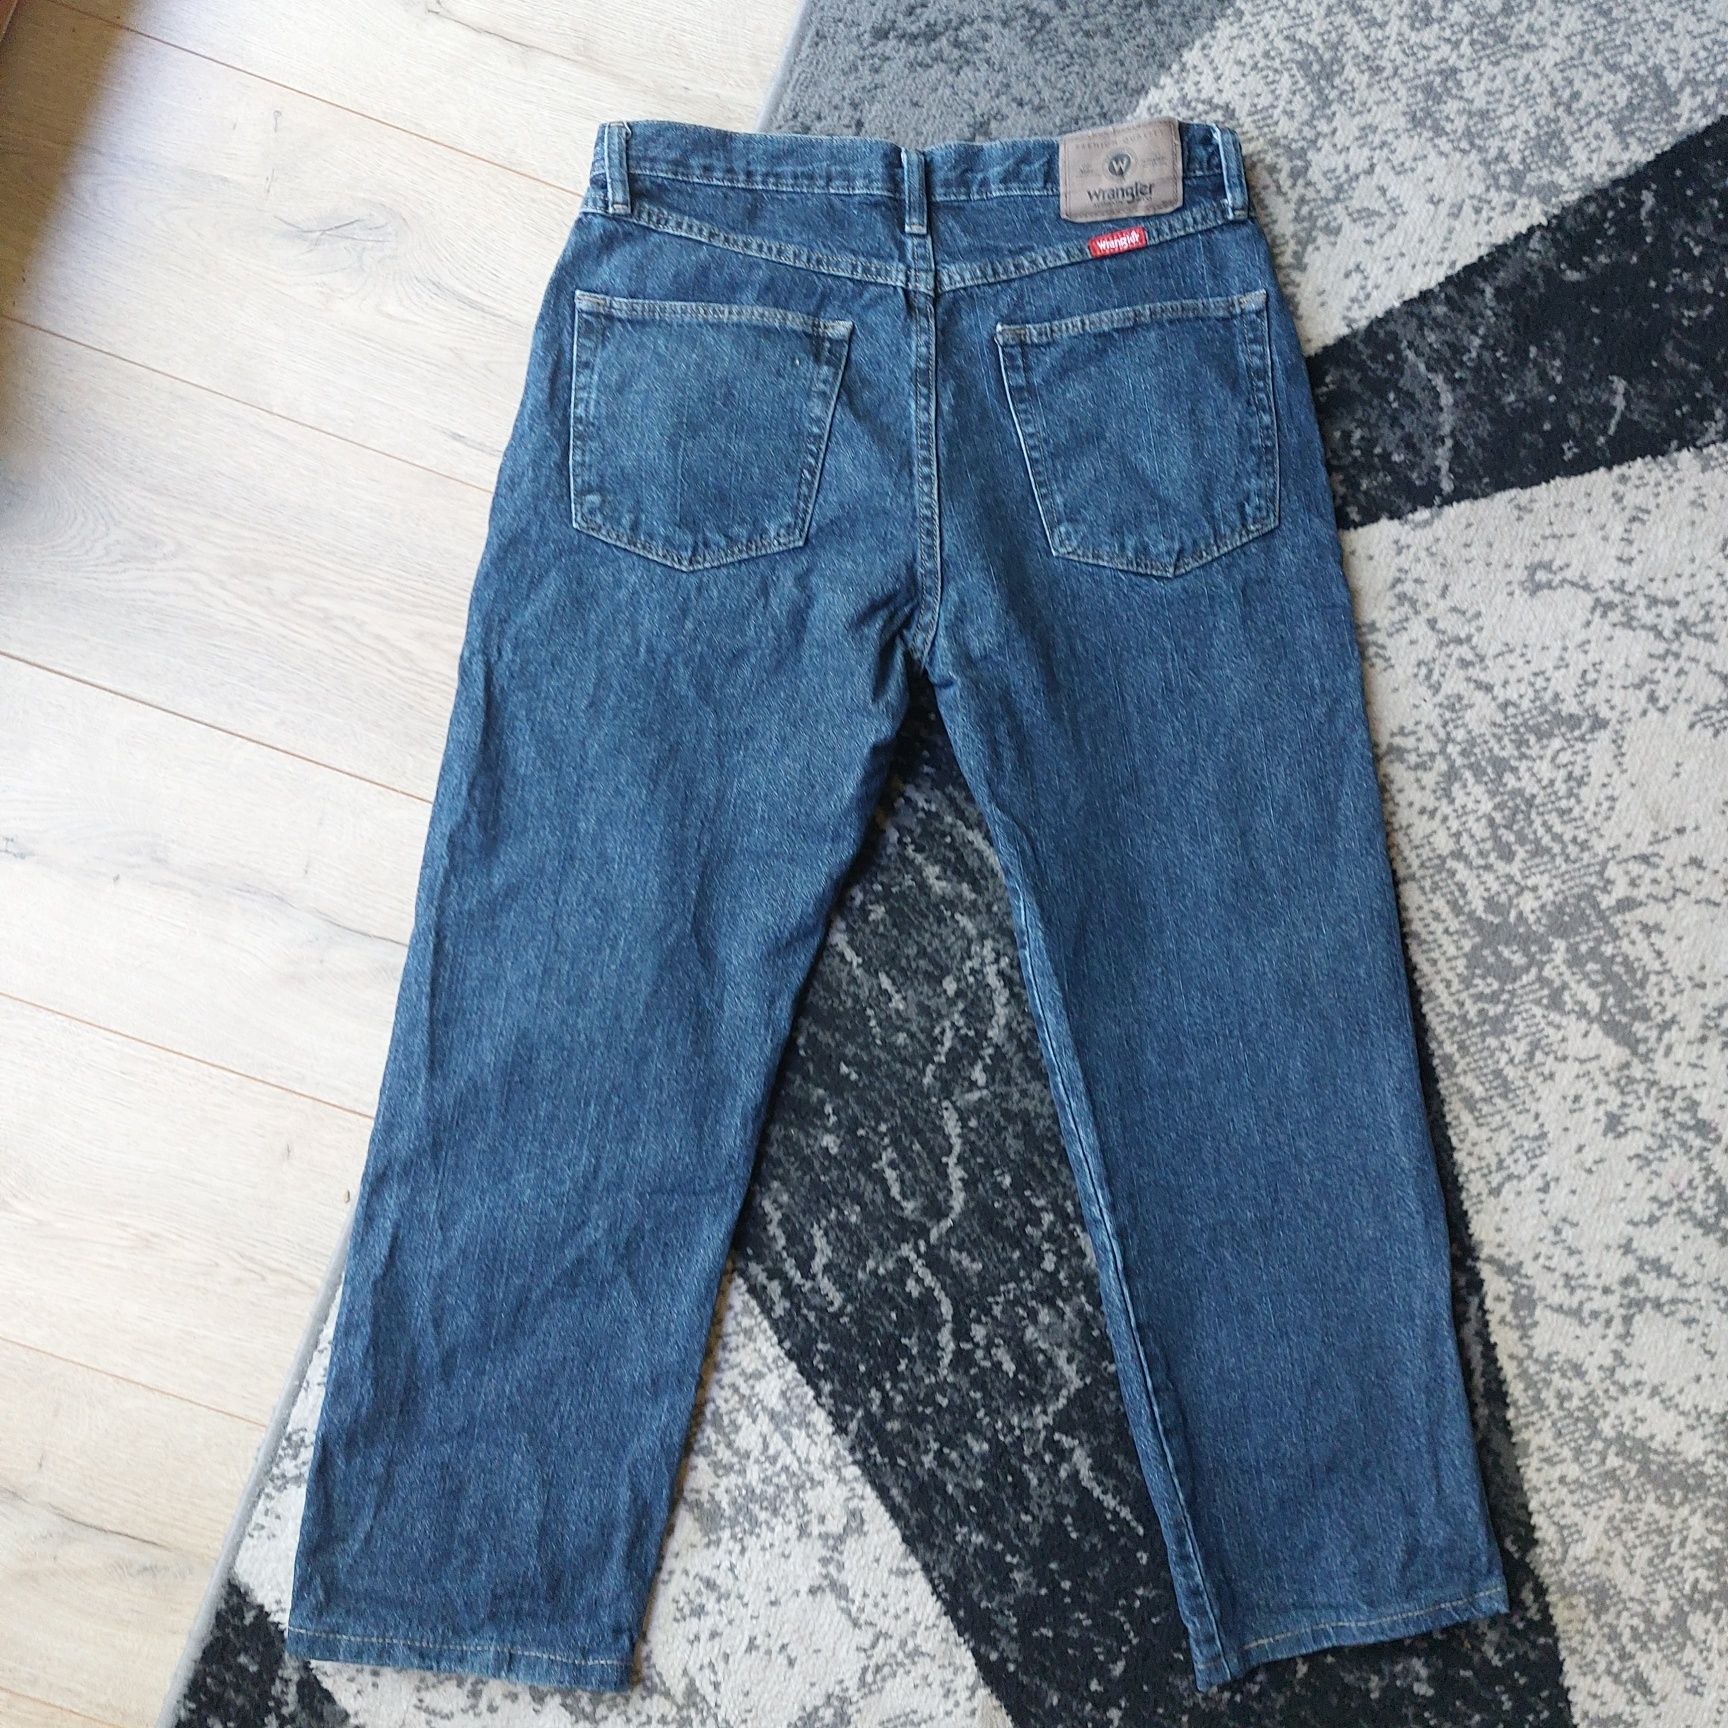 Wrangler 32/30 super jeans